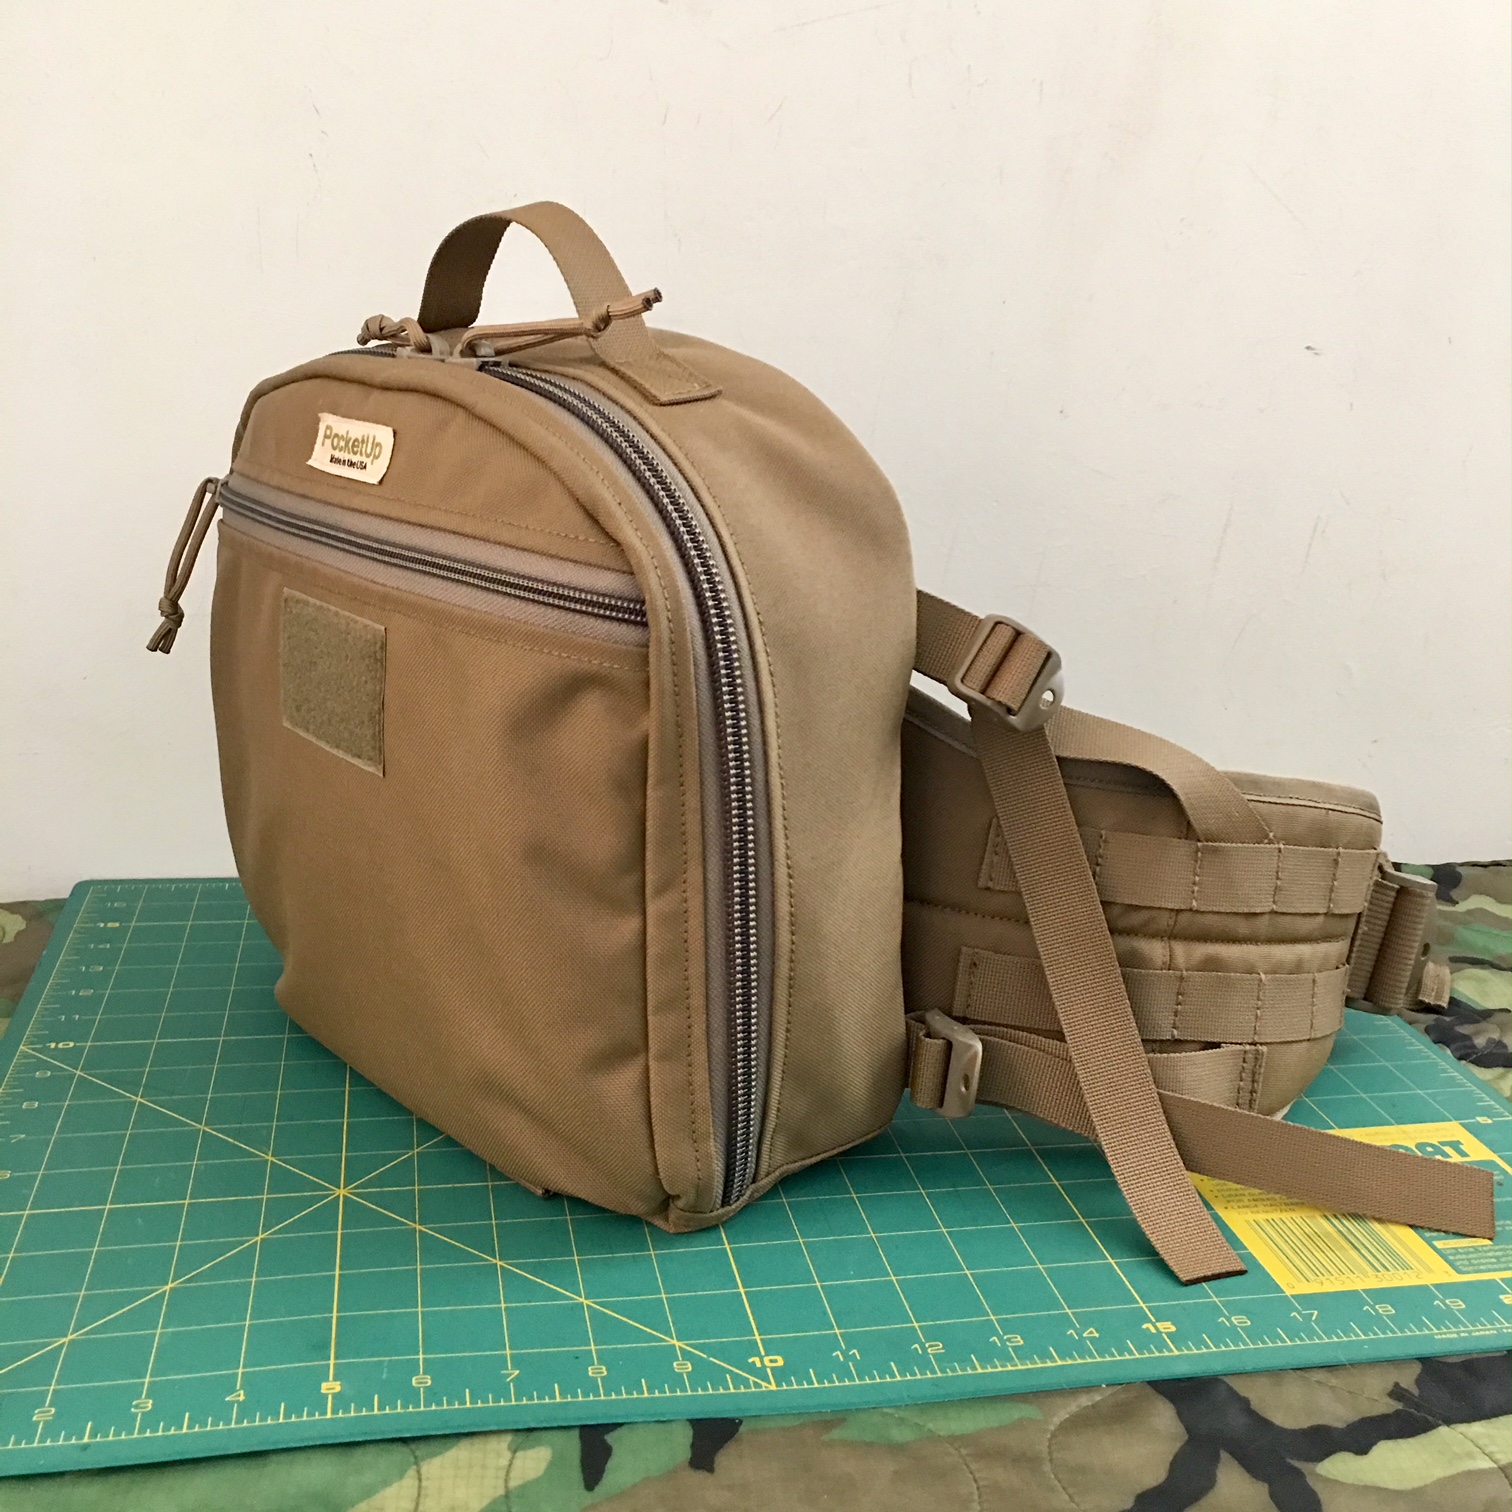 Kit Bag for Fly Fishing